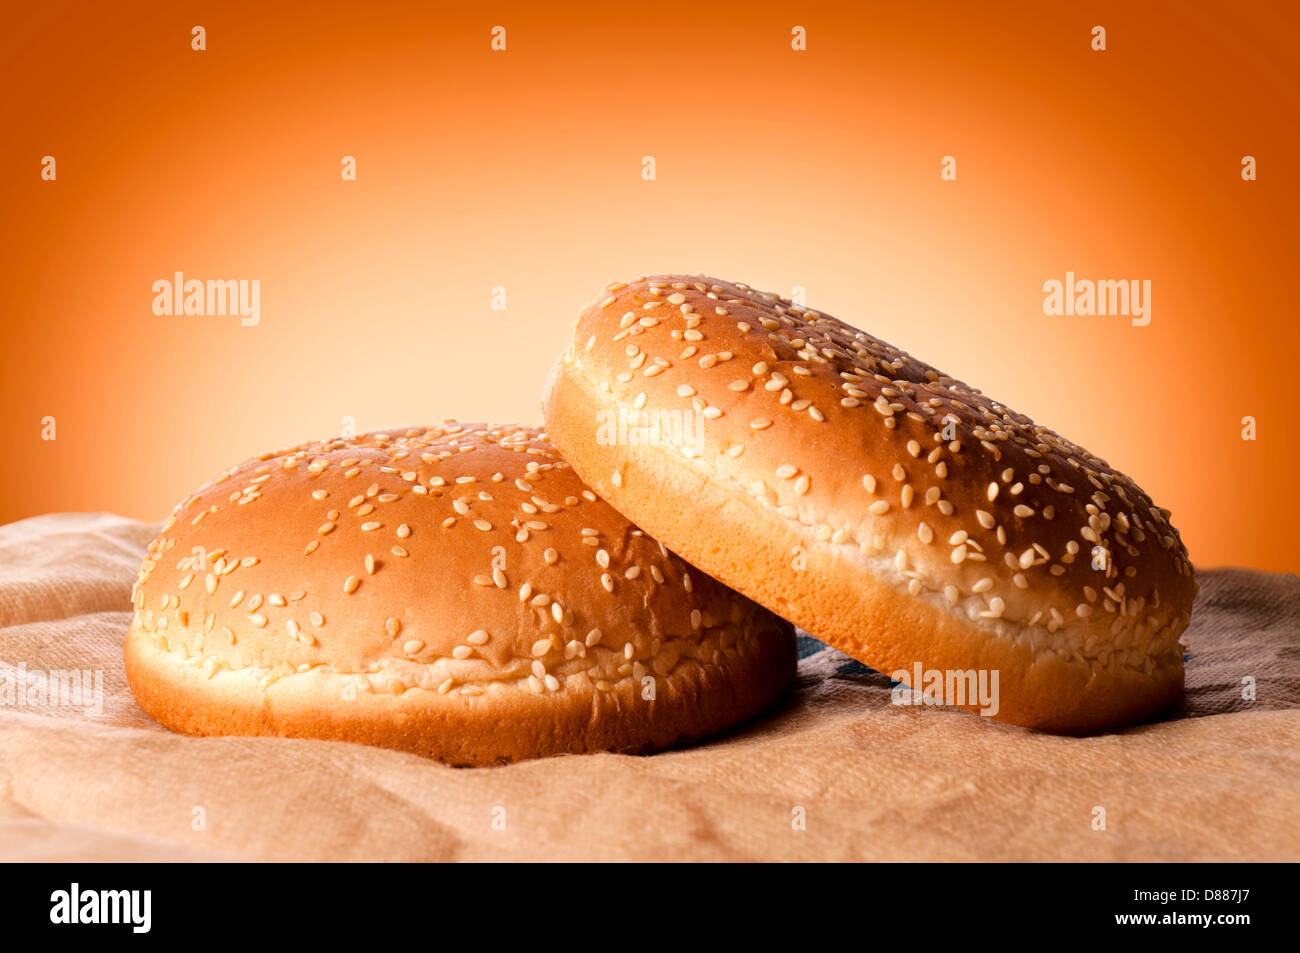 Zwei frische Hamburger-Brötchen Stockfotografie - Alamy